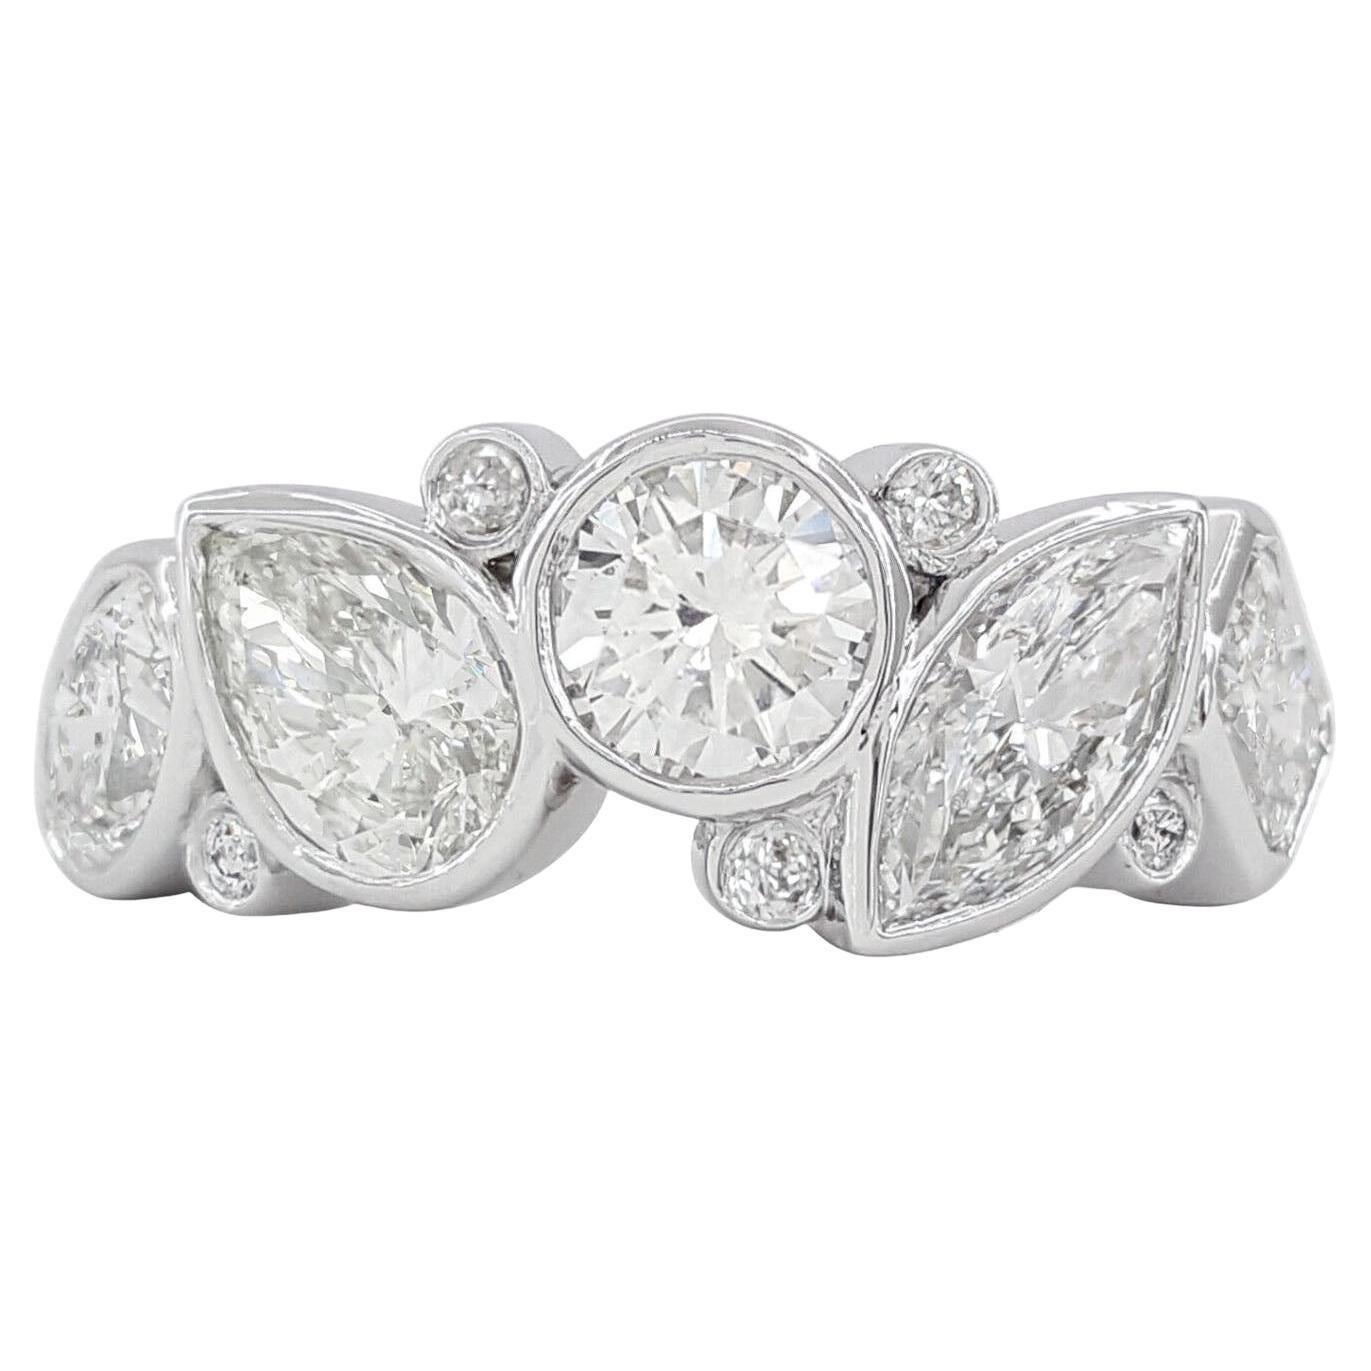  Bague en diamant certifié GIA de 3,62 carats, taille coussin, marquise, poire ou princesse